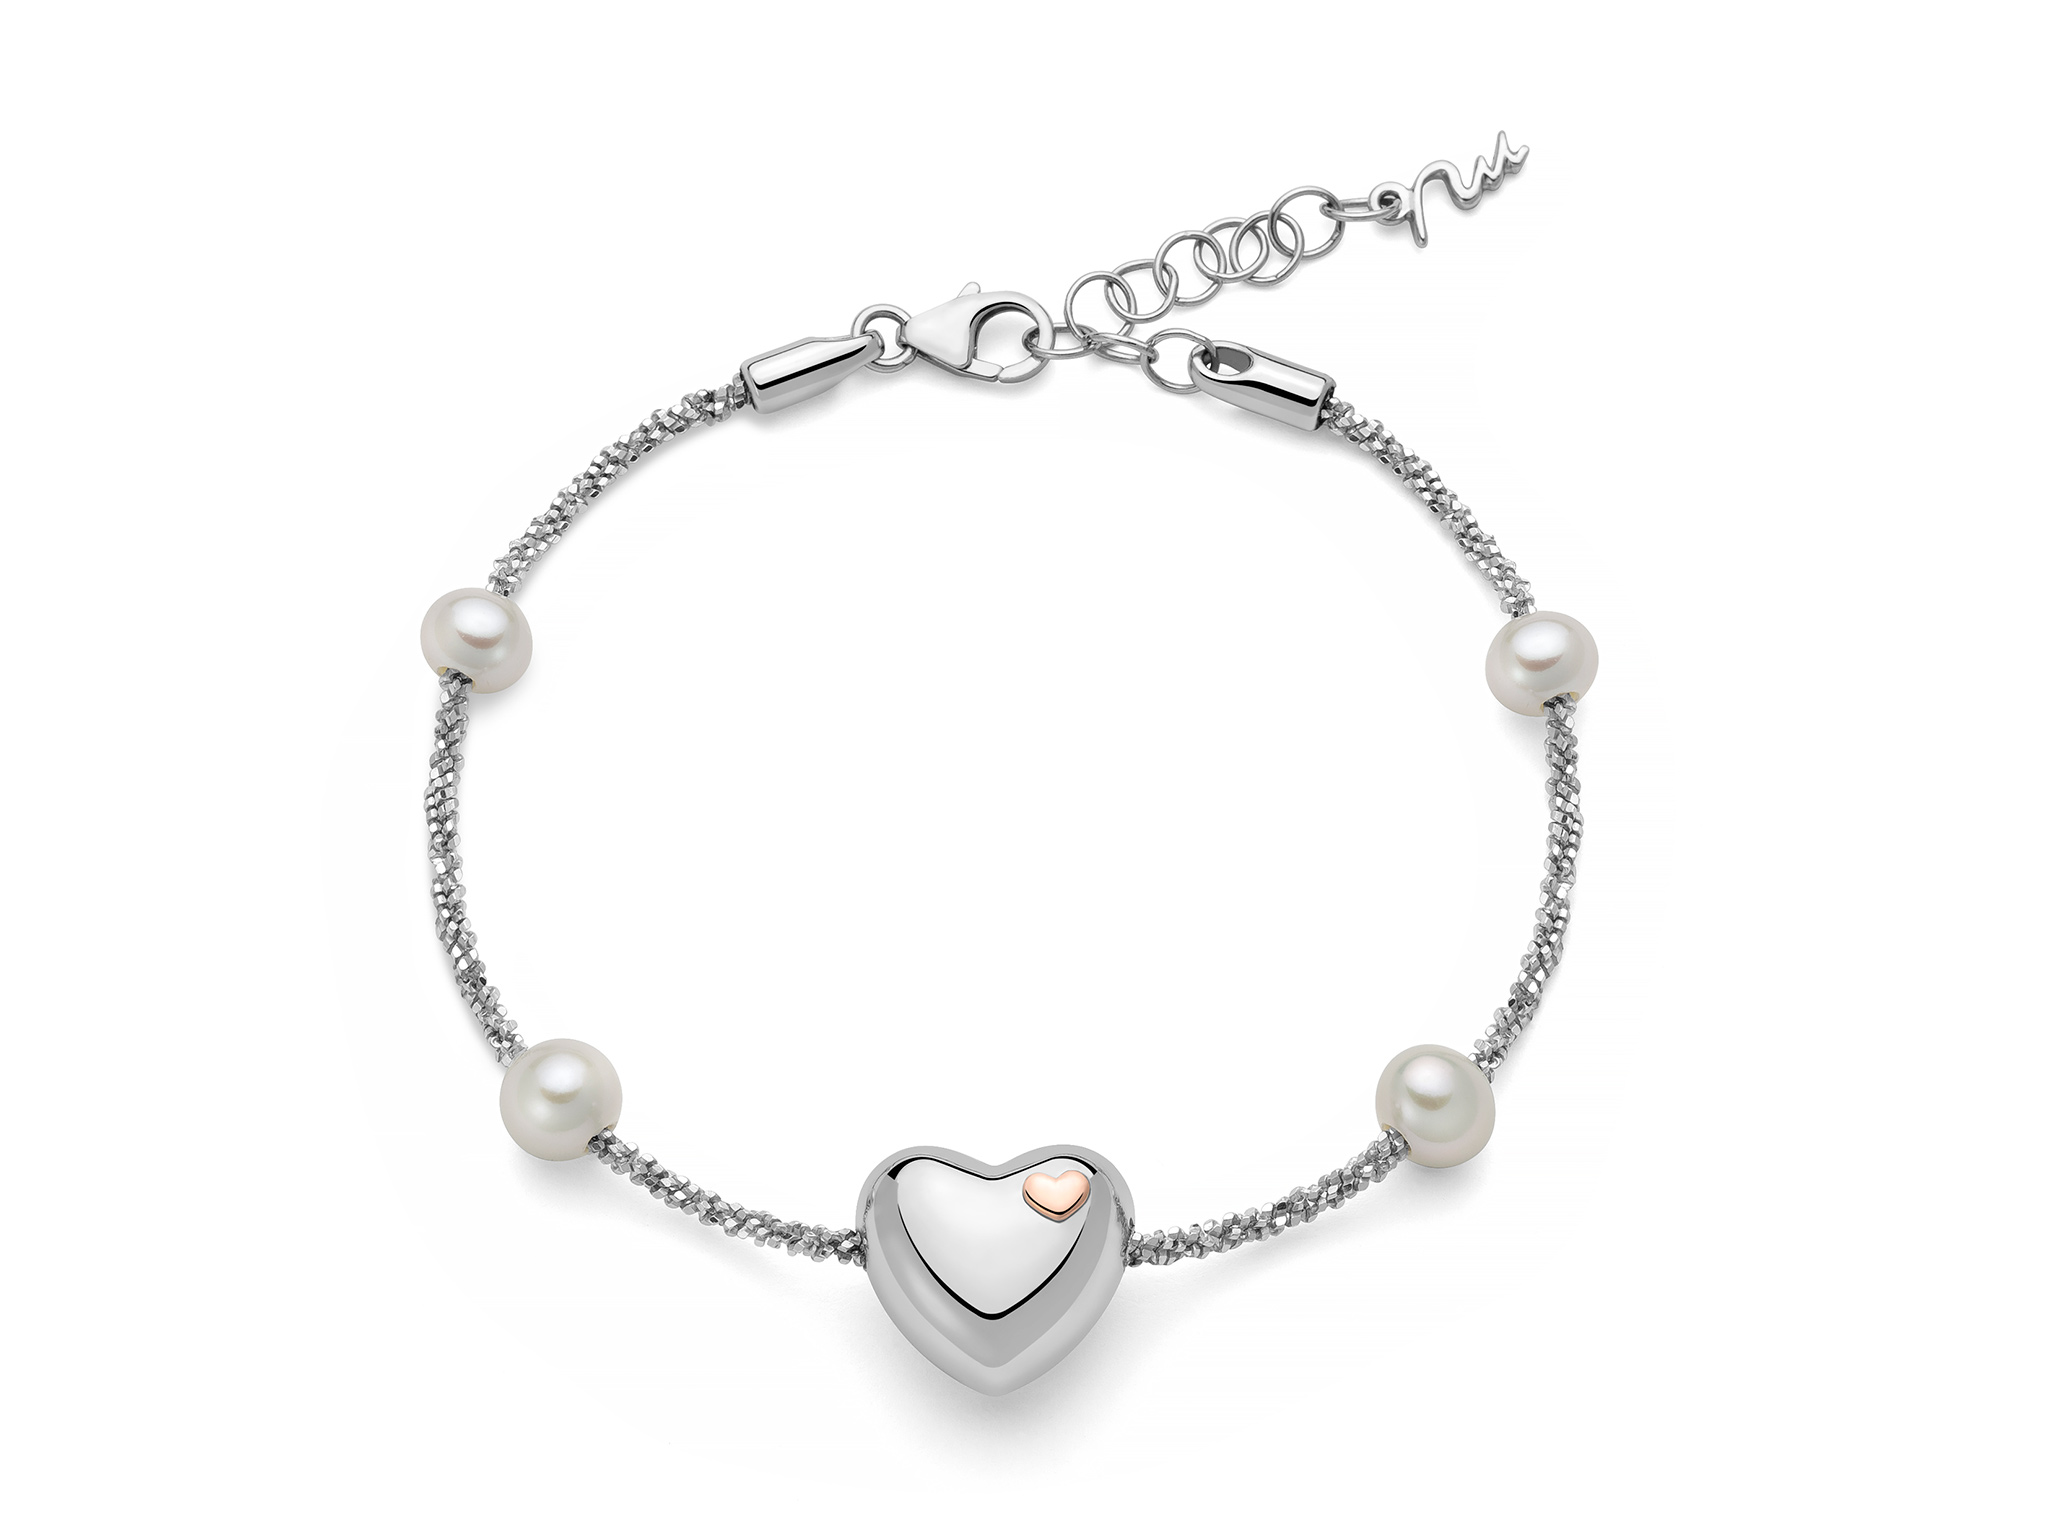 Bracciale in argento e perle con centrale a cuore - PBR3493